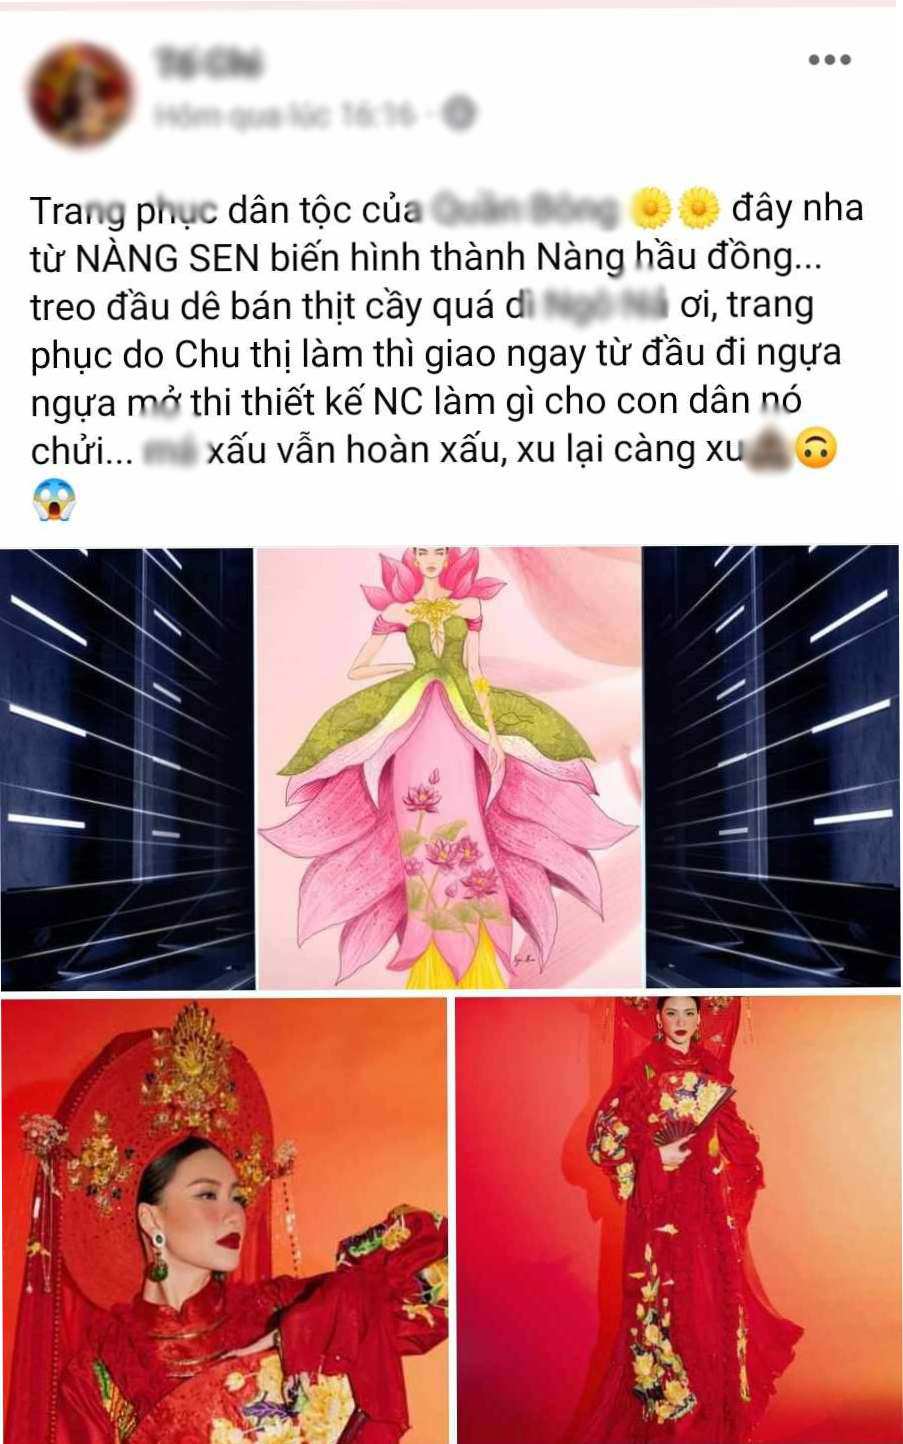 Trang phục dân tộc của Bùi Quỳnh Hoa gây tranh cãi, người đẹp chủ nhà bị tố 